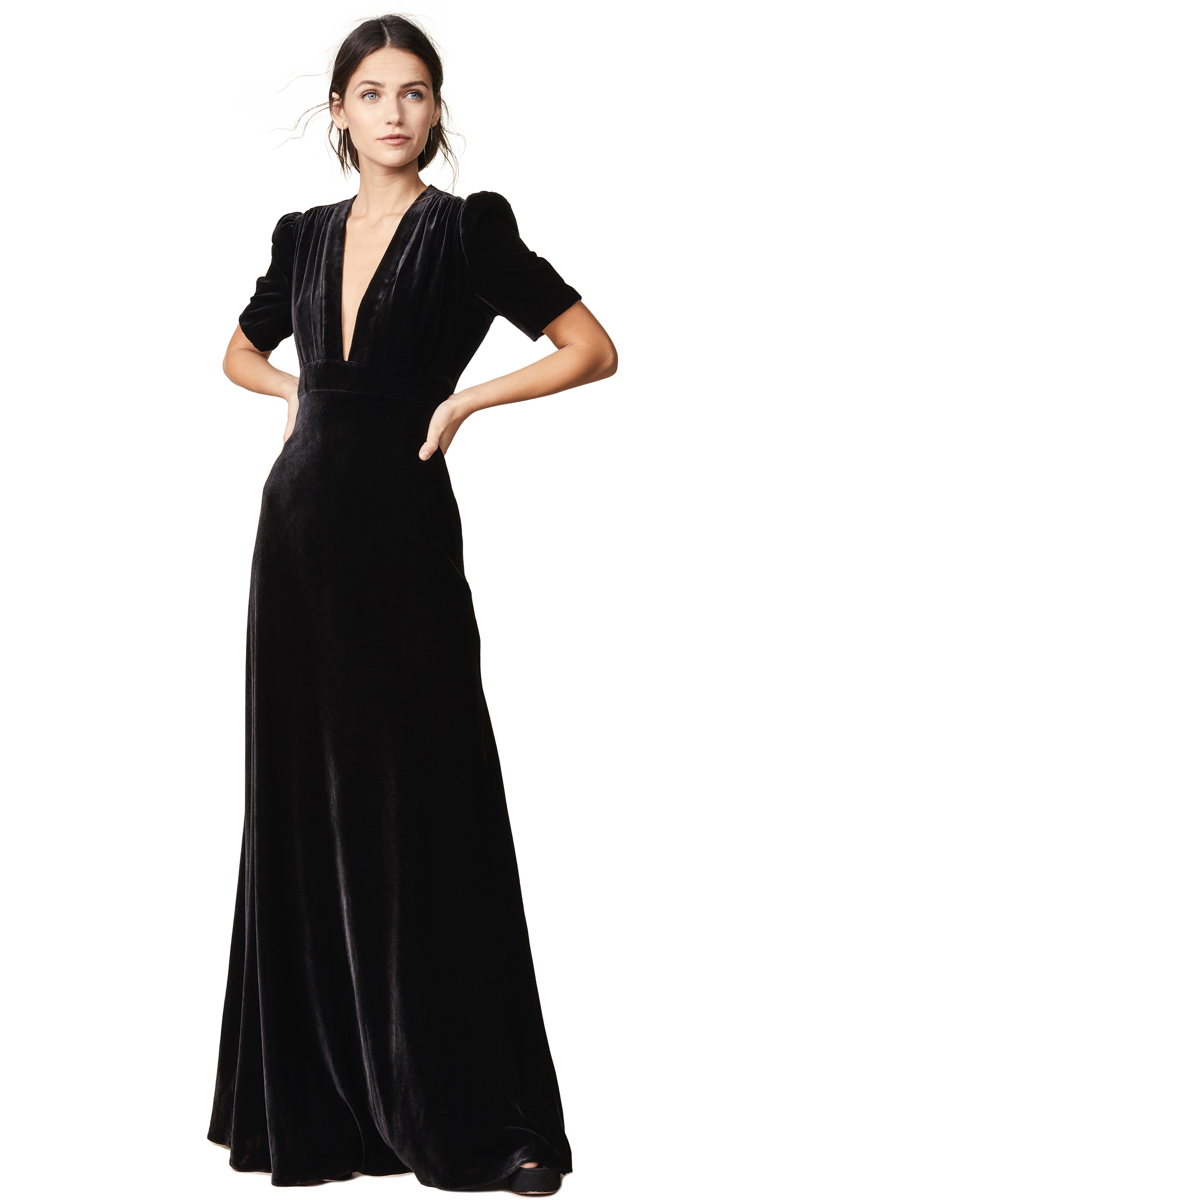 black velvet formal dress